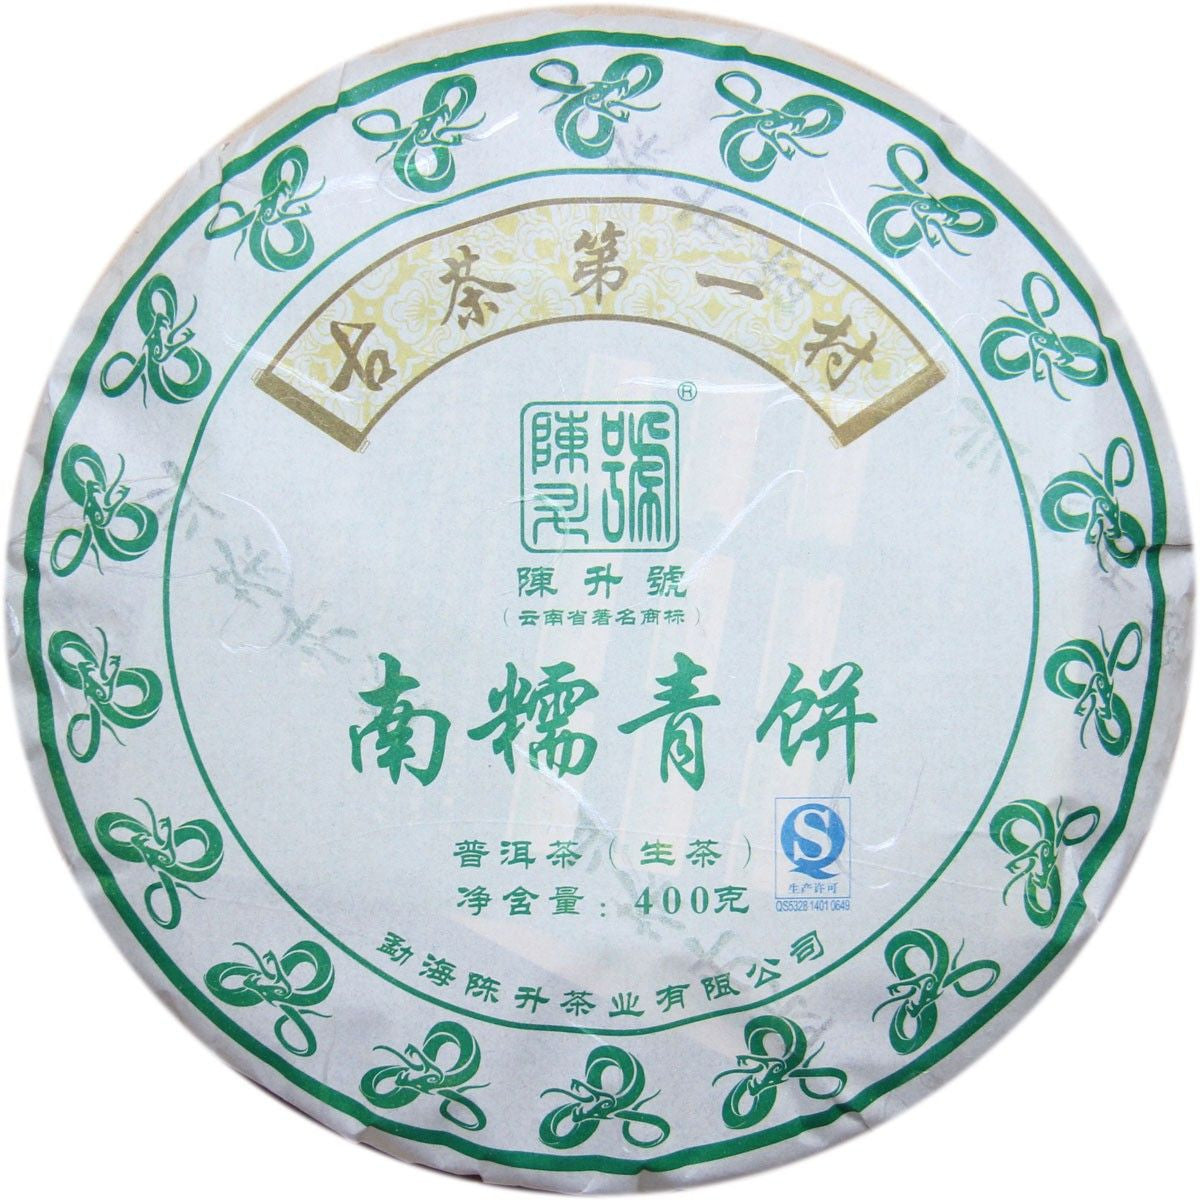 Chen Sheng Hao Brand Pu-erh Tea